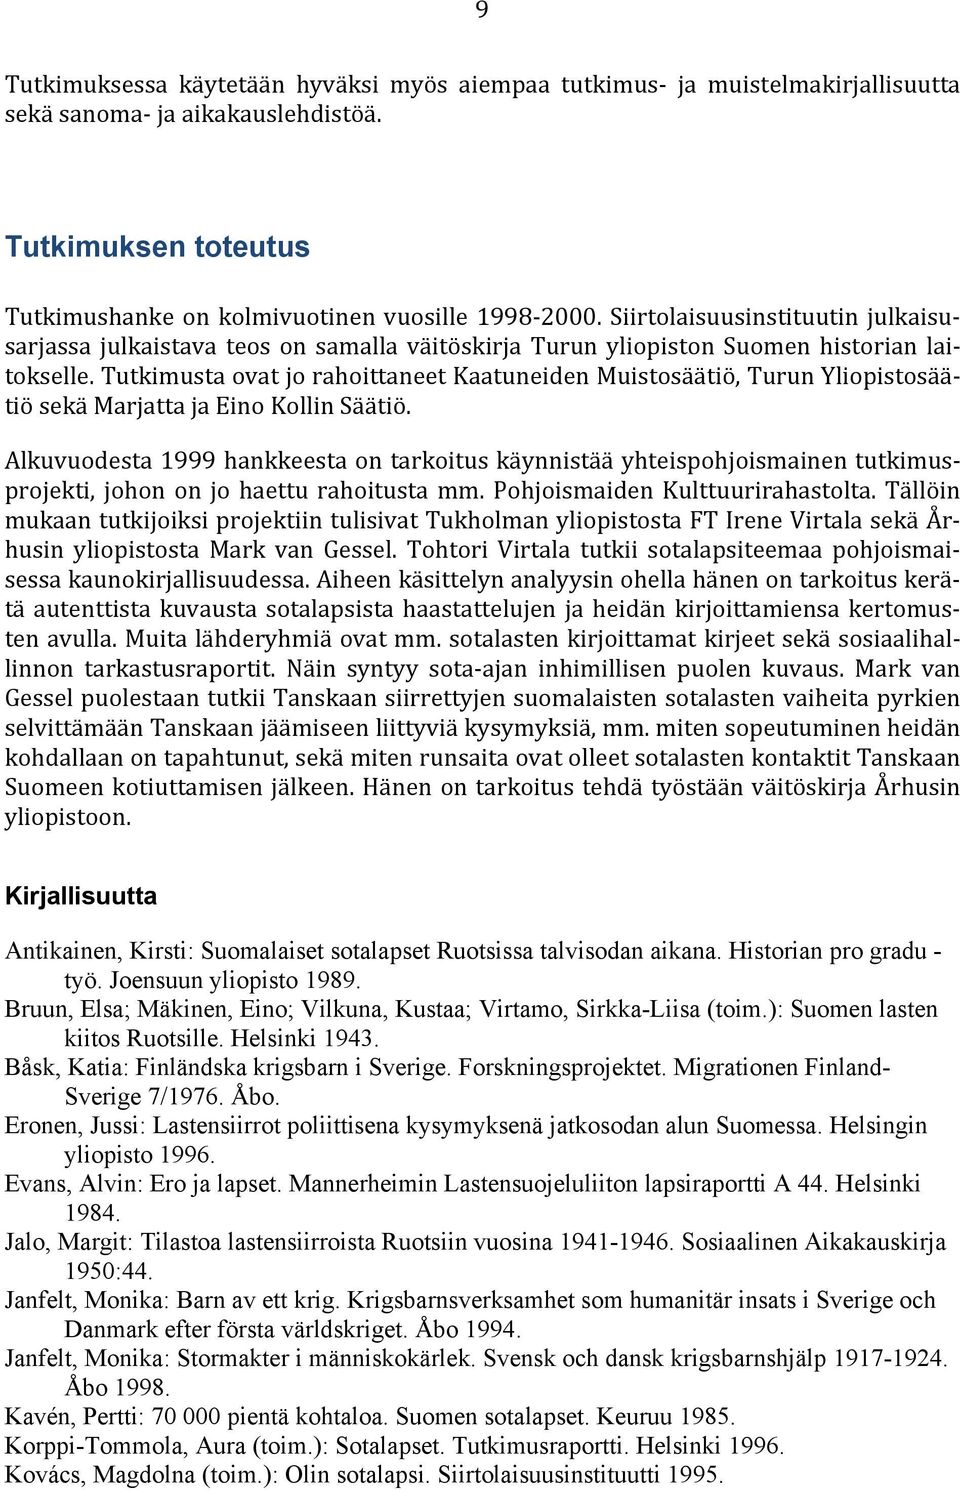 Tutkimusta ovat jo rahoittaneet Kaatuneiden Muistosäätiö, Turun Yliopistosäätiö sekä Marjatta ja Eino Kollin Säätiö.